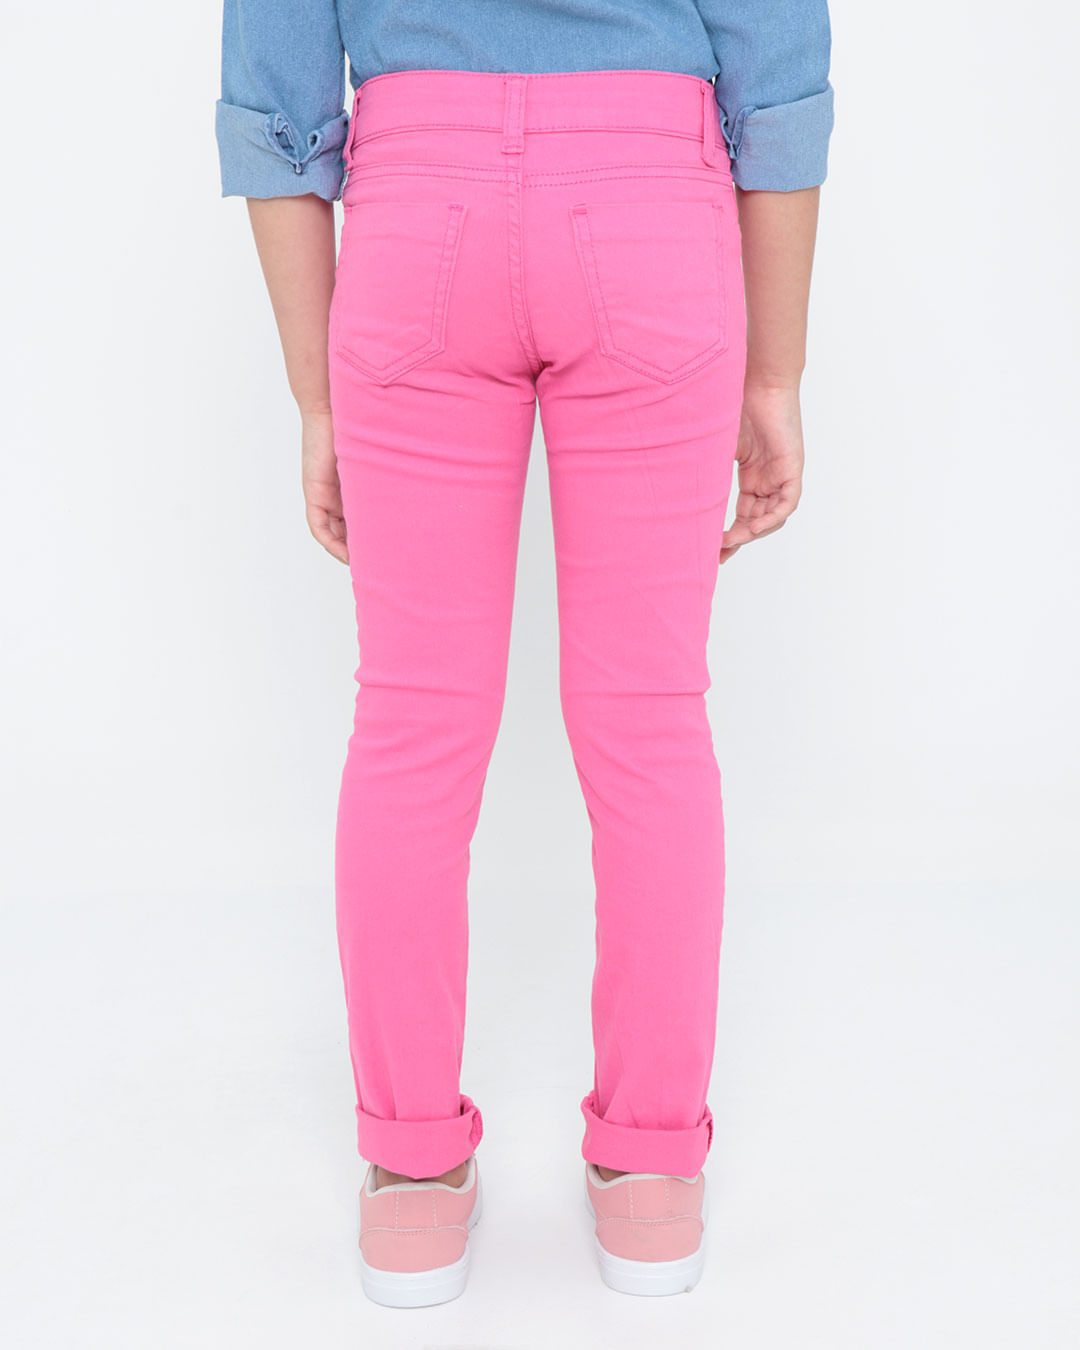 Calca-Jeans-Infantil-Cintura-Media-Rosa-Pink